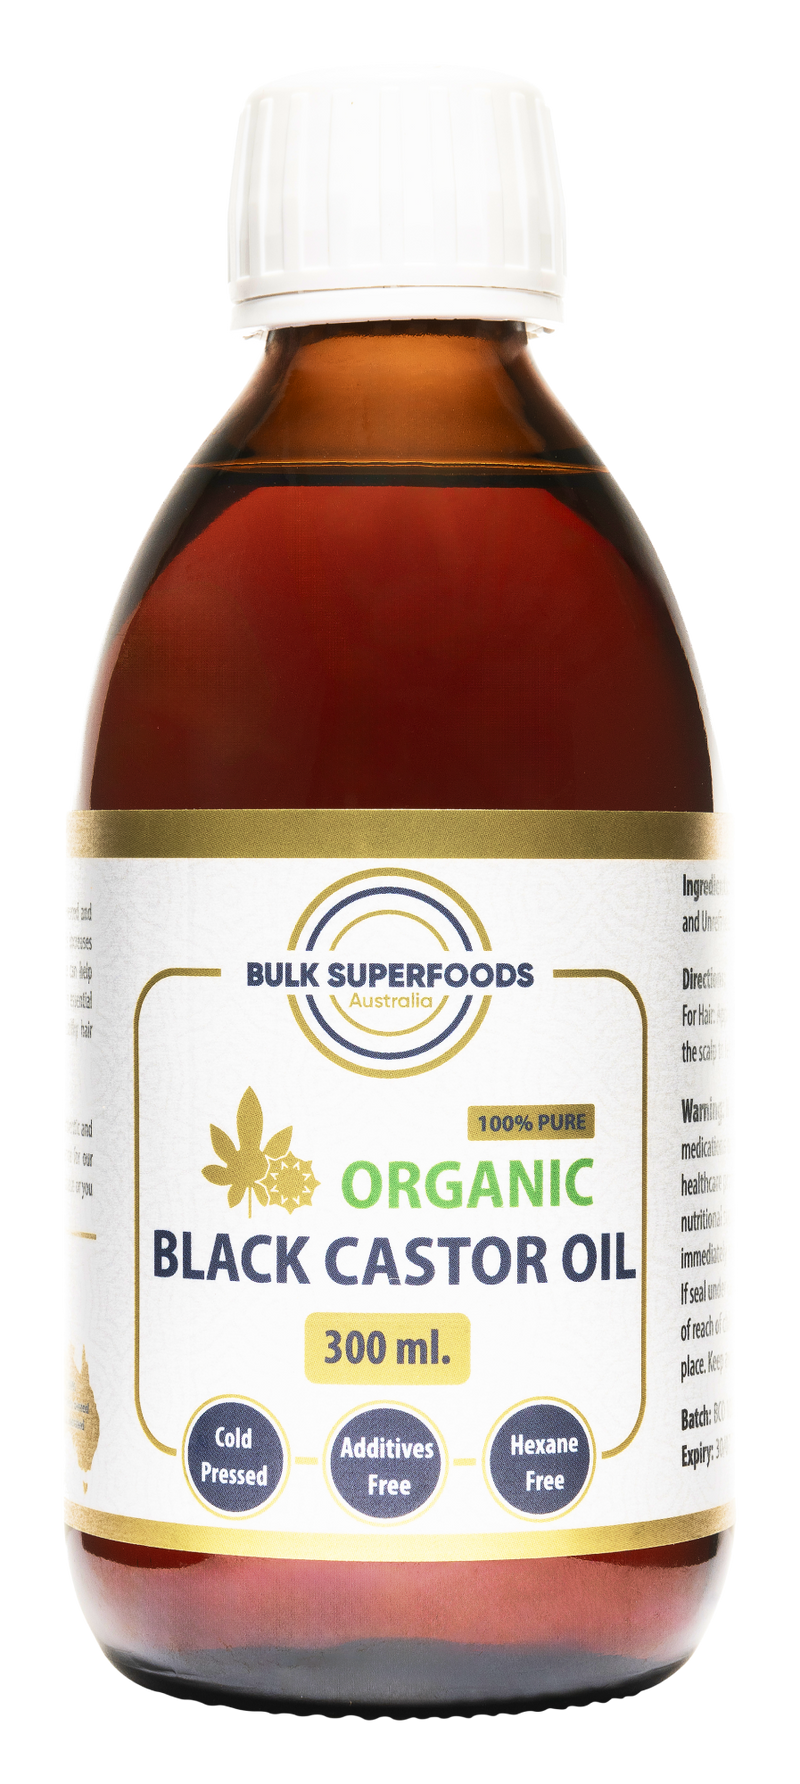 Organic Black Castor Oil 300ml by Bulk Superfoods